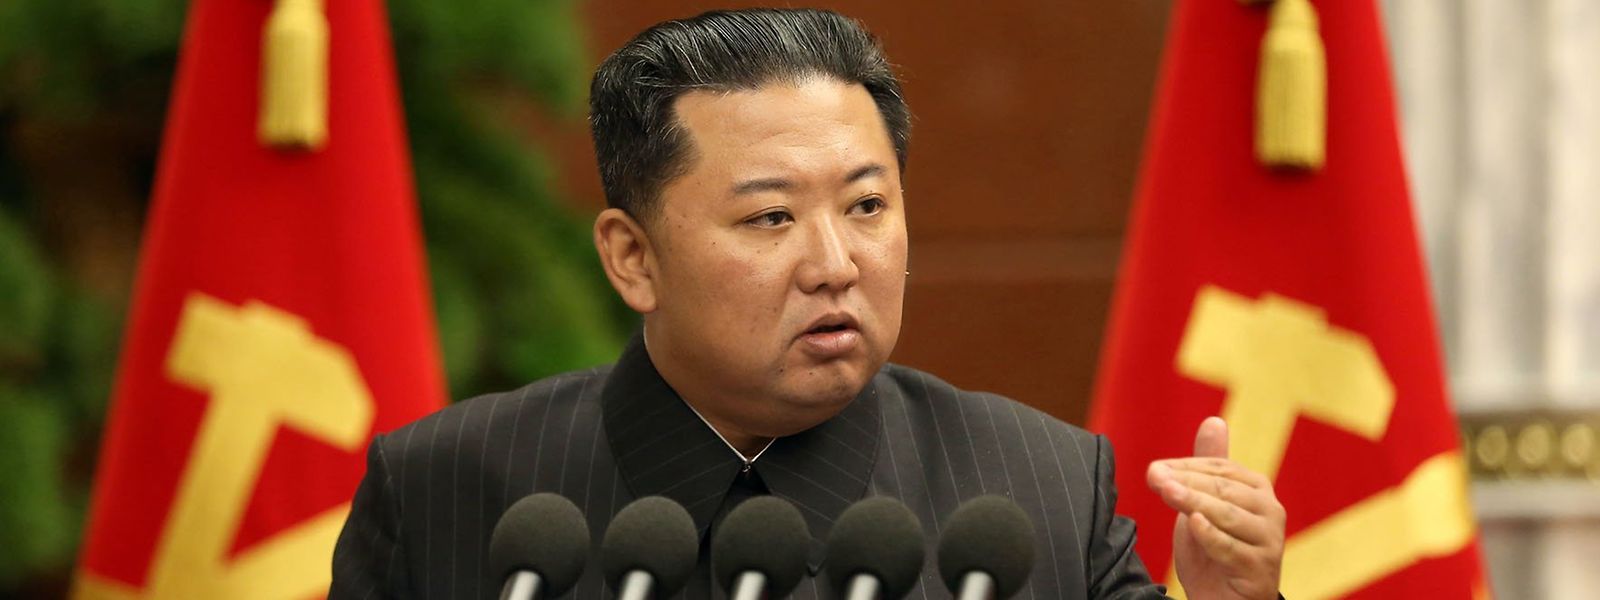 Nordkoreas Machthaber Kim Jong Un will mit dem jüngsten Raketentest ein Zeichen setzen.